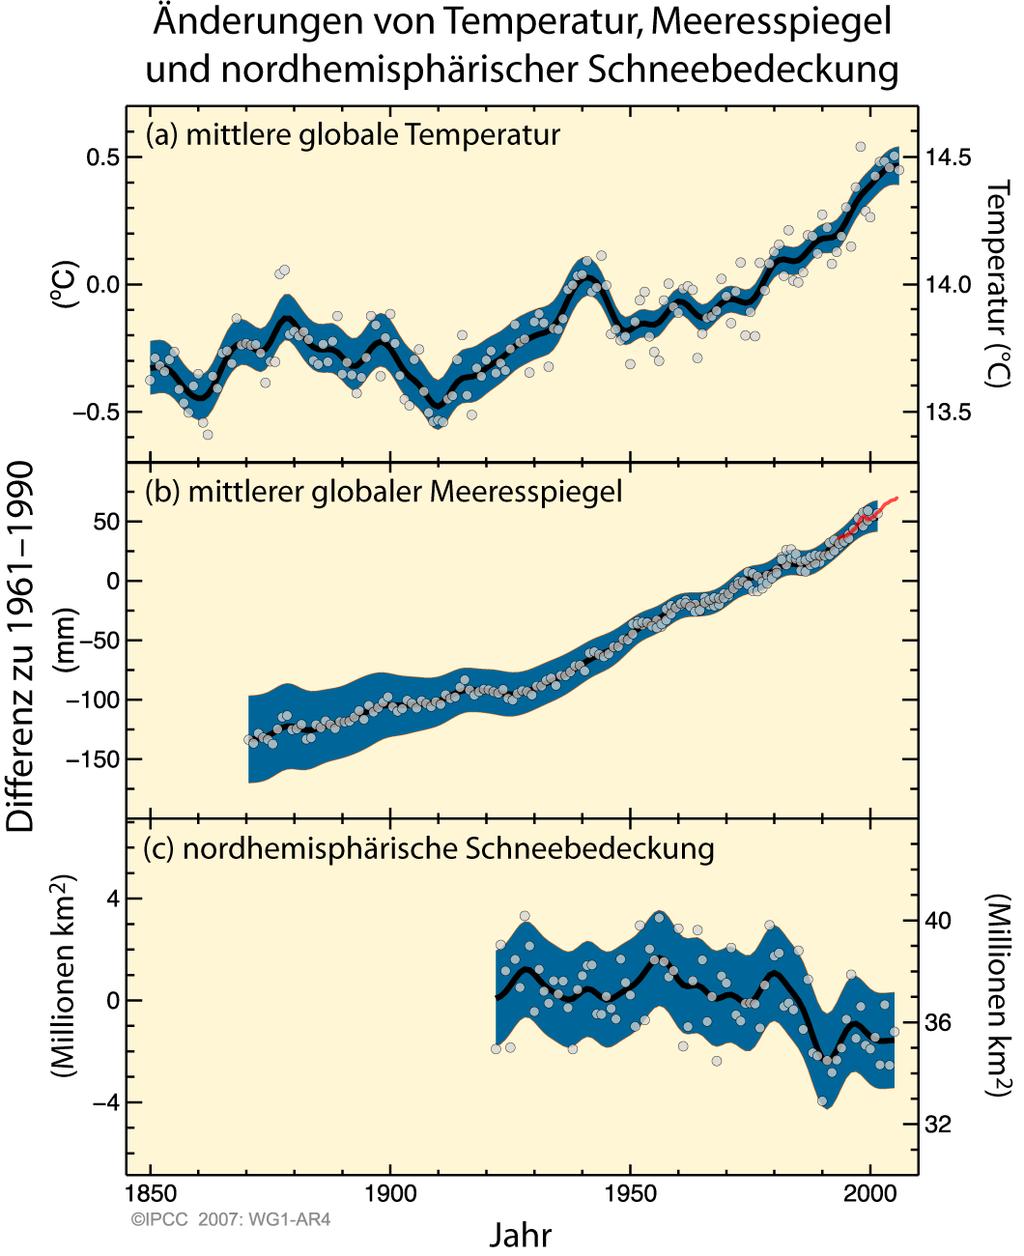 Elf der letzten zwölf Jahre (1995-2006) gehören zu den zwölf wärmsten Jahren seit der instrumentellen Messung der globalen Erdoberflächentemperatur 9 (seit 1850).